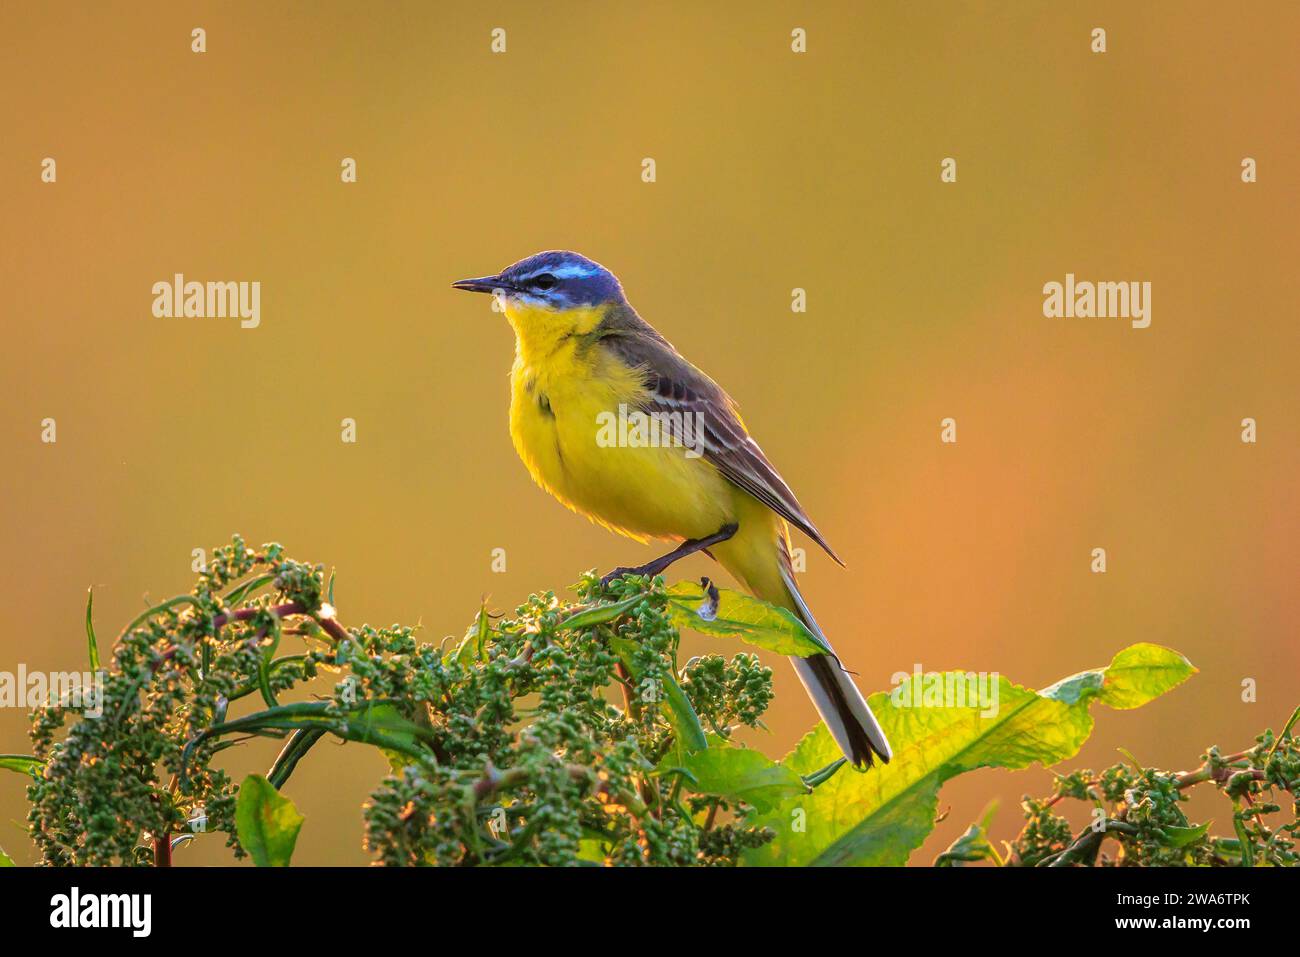 Primo piano di un uccello giallo occidentale maschile, Motacilla flava, che canta nella vegetazione al tramonto durante la stagione primaverile. Foto Stock